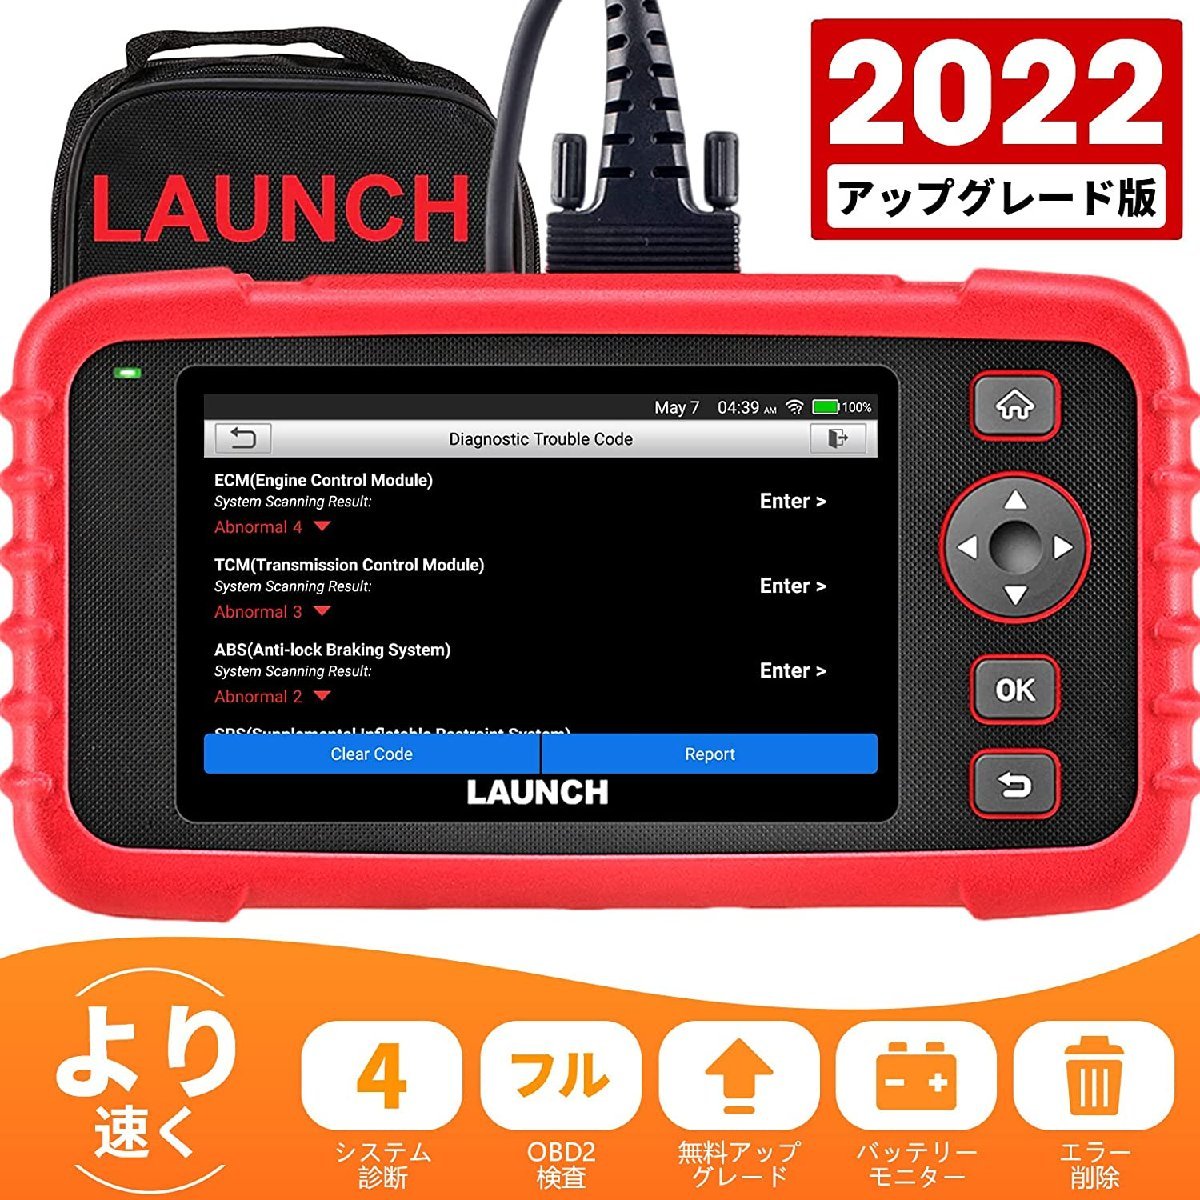 新品/送料無料] Launch CRP123X obd2 診断機 BWM ベンツ 日本車対応 故障診断機 エンジン/トランスミッション/ABS/SRS用  コードリーダー